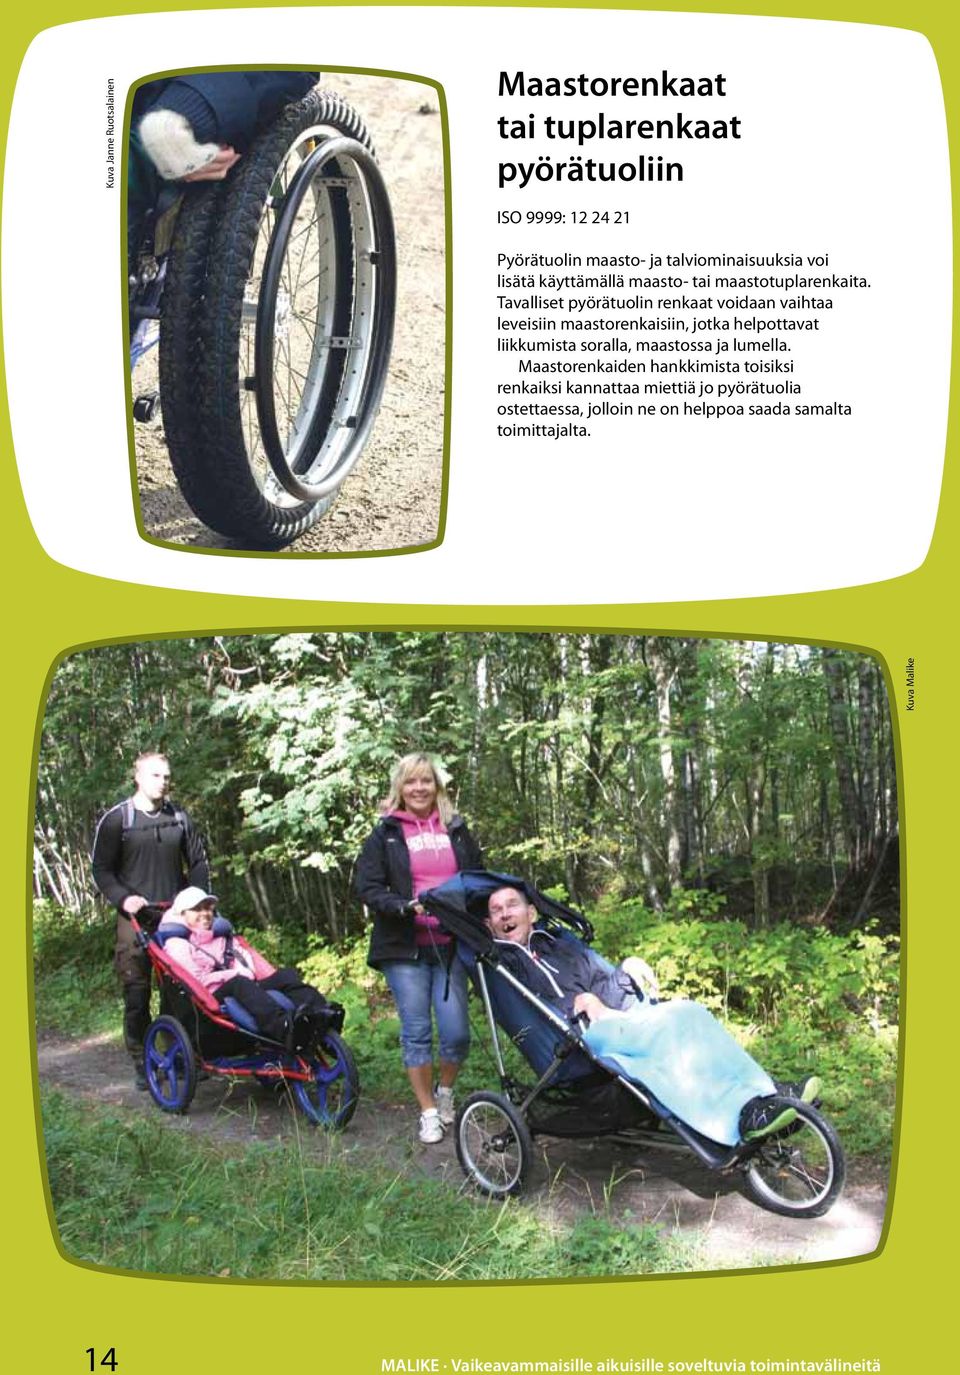 Tavalliset pyörätuolin renkaat voidaan vaihtaa leveisiin maastorenkaisiin, jotka helpottavat liikkumista soralla, maastossa ja